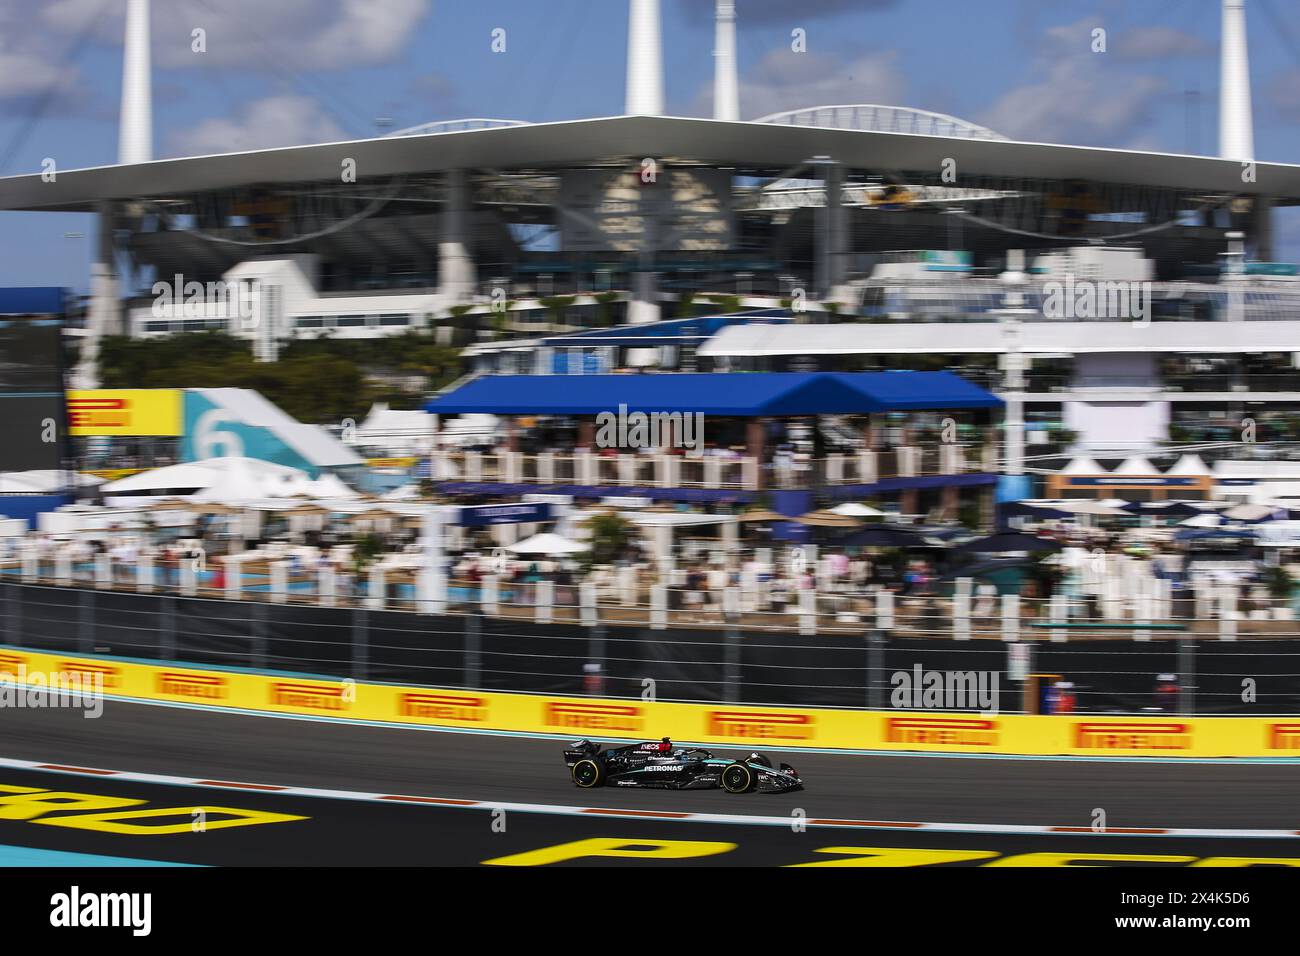 63 RUSSELL George (gbr), Mercedes AMG F1 Team W15, action lors du Grand Prix de formule 1 Crypto.com de Miami 2024, 6e manche du Championnat du monde de formule 1 2024 du 3 au 5 mai 2024 sur l'Autodrome international de Miami, à Miami, États-Unis d'Amérique Banque D'Images